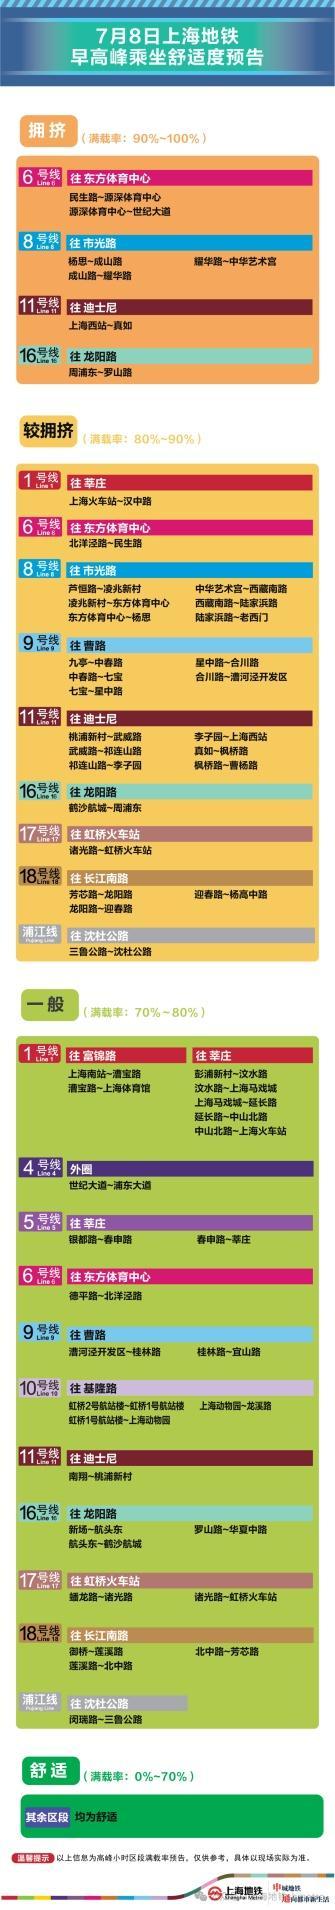 7月8日早高峰曹路、惠南等9座地铁站计划限流